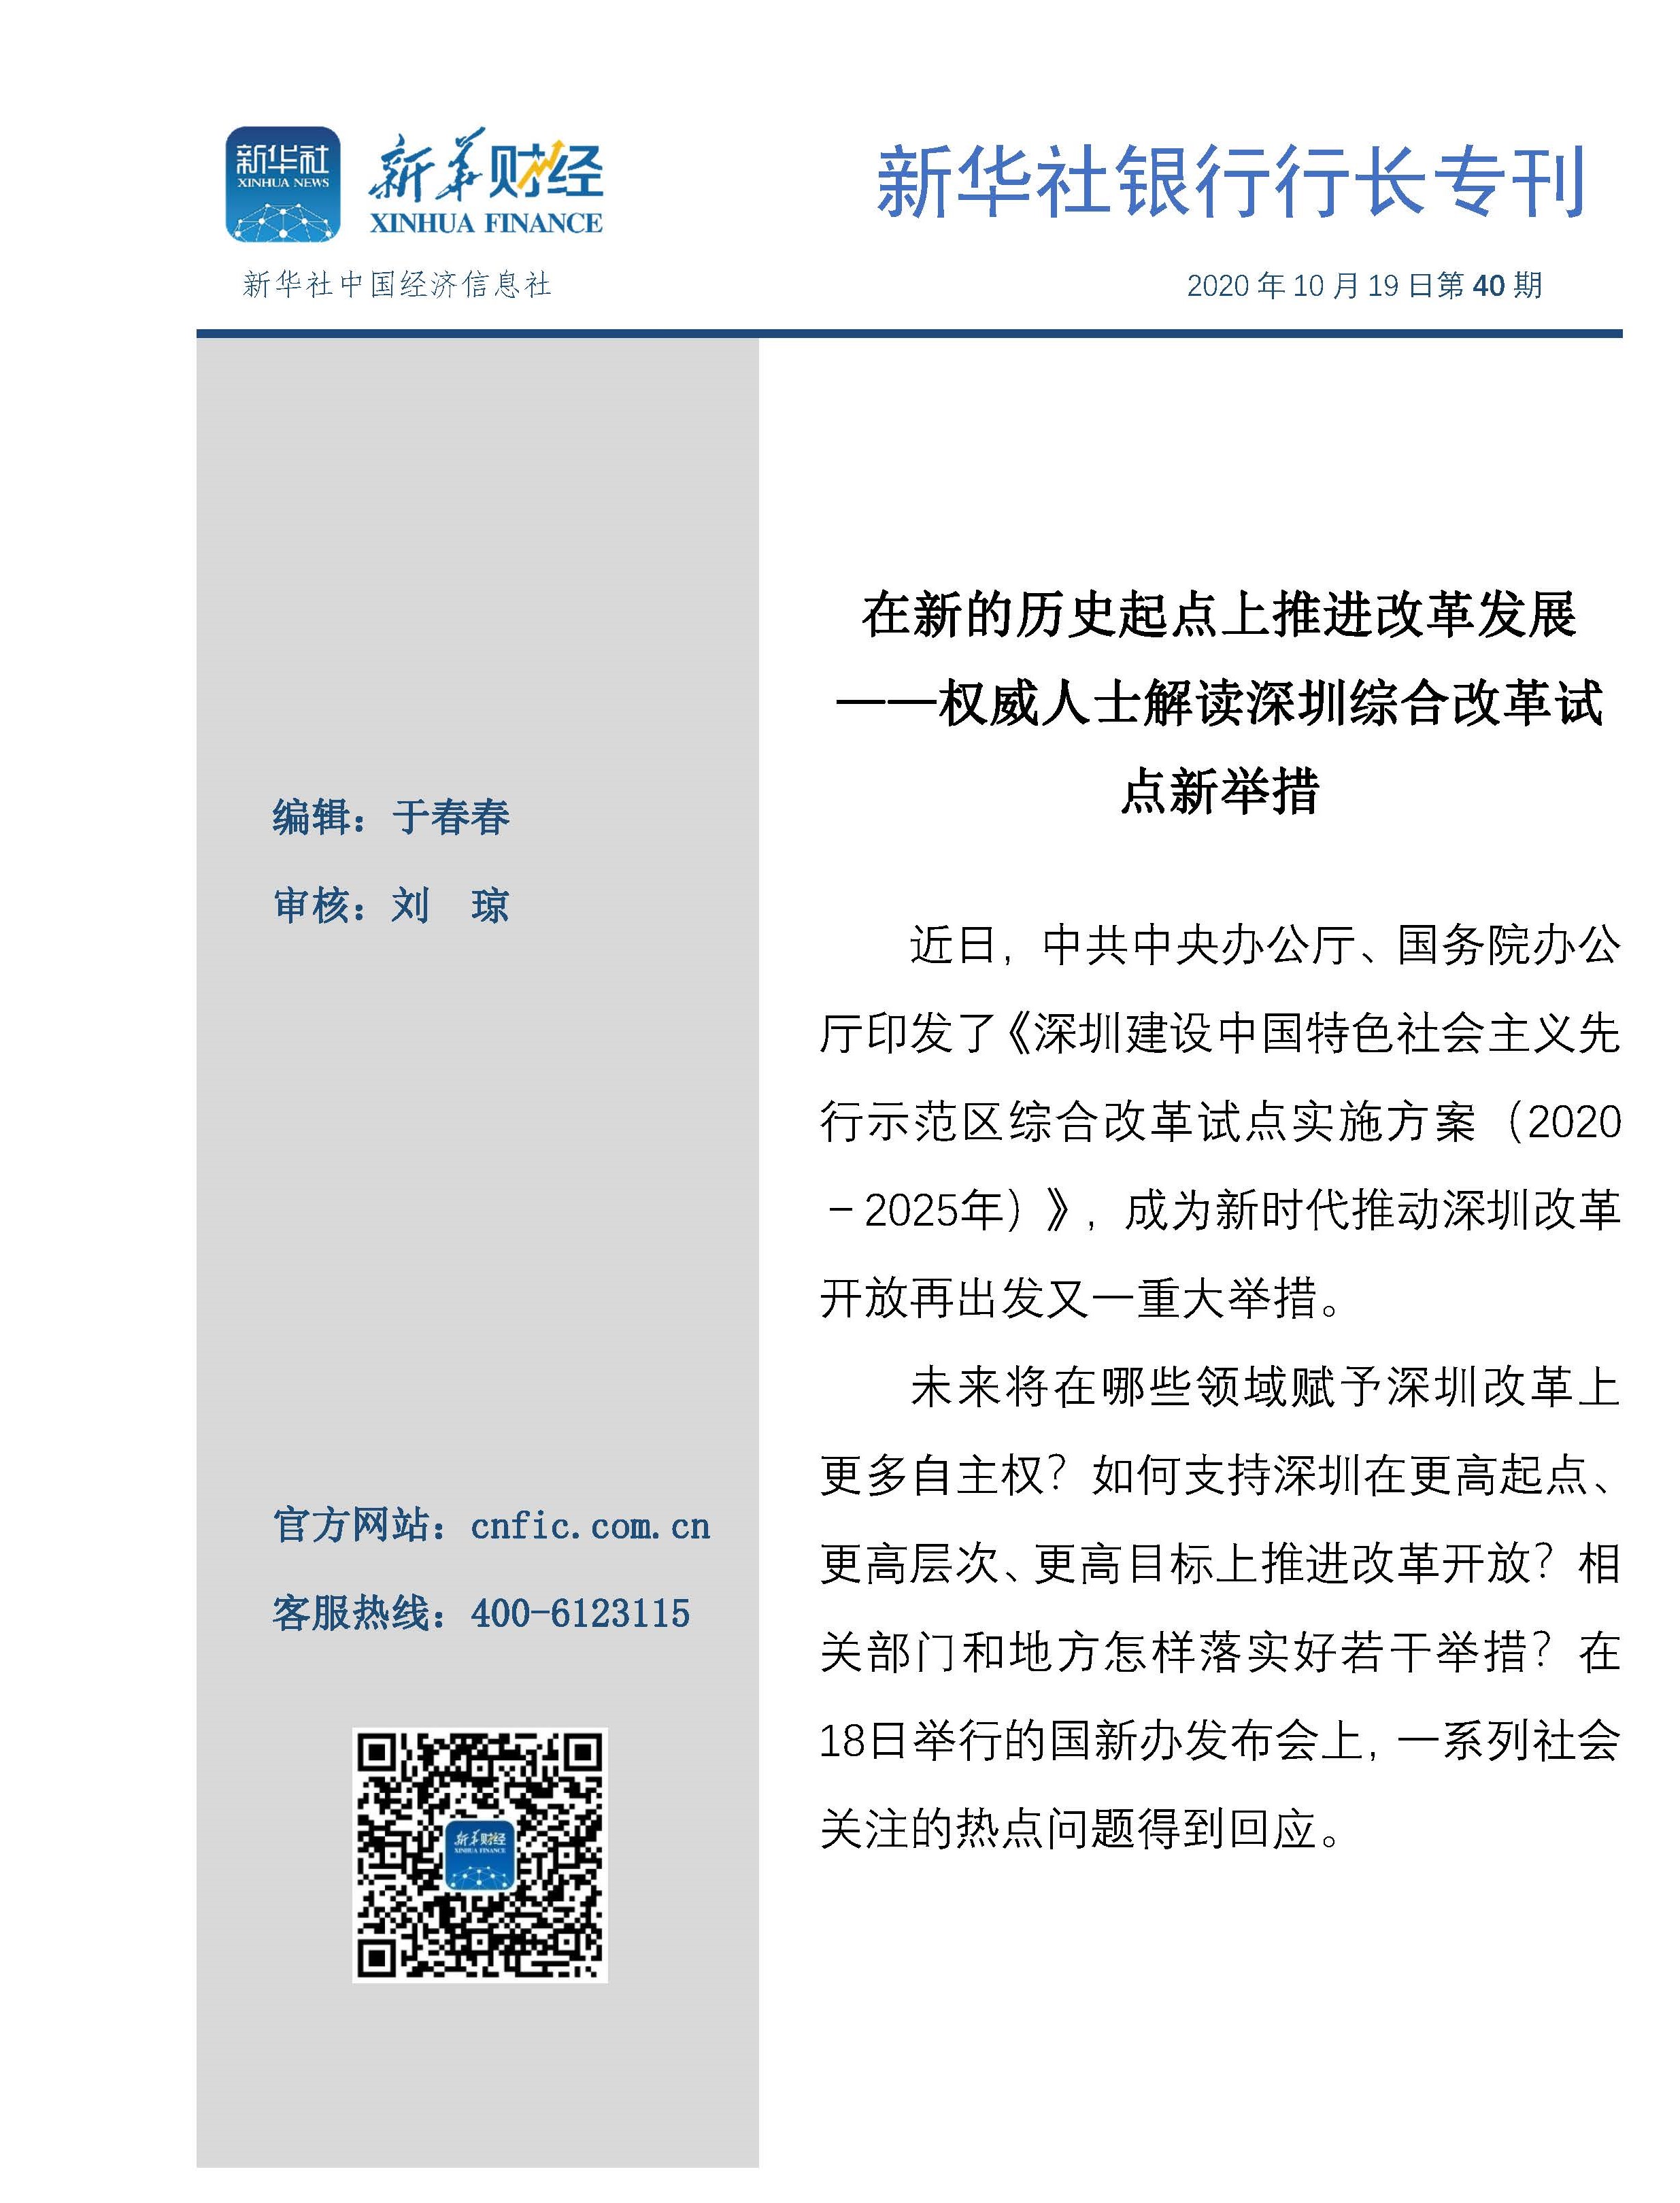 新华社银行行长专刊2020年第40期（20201019）.jpg